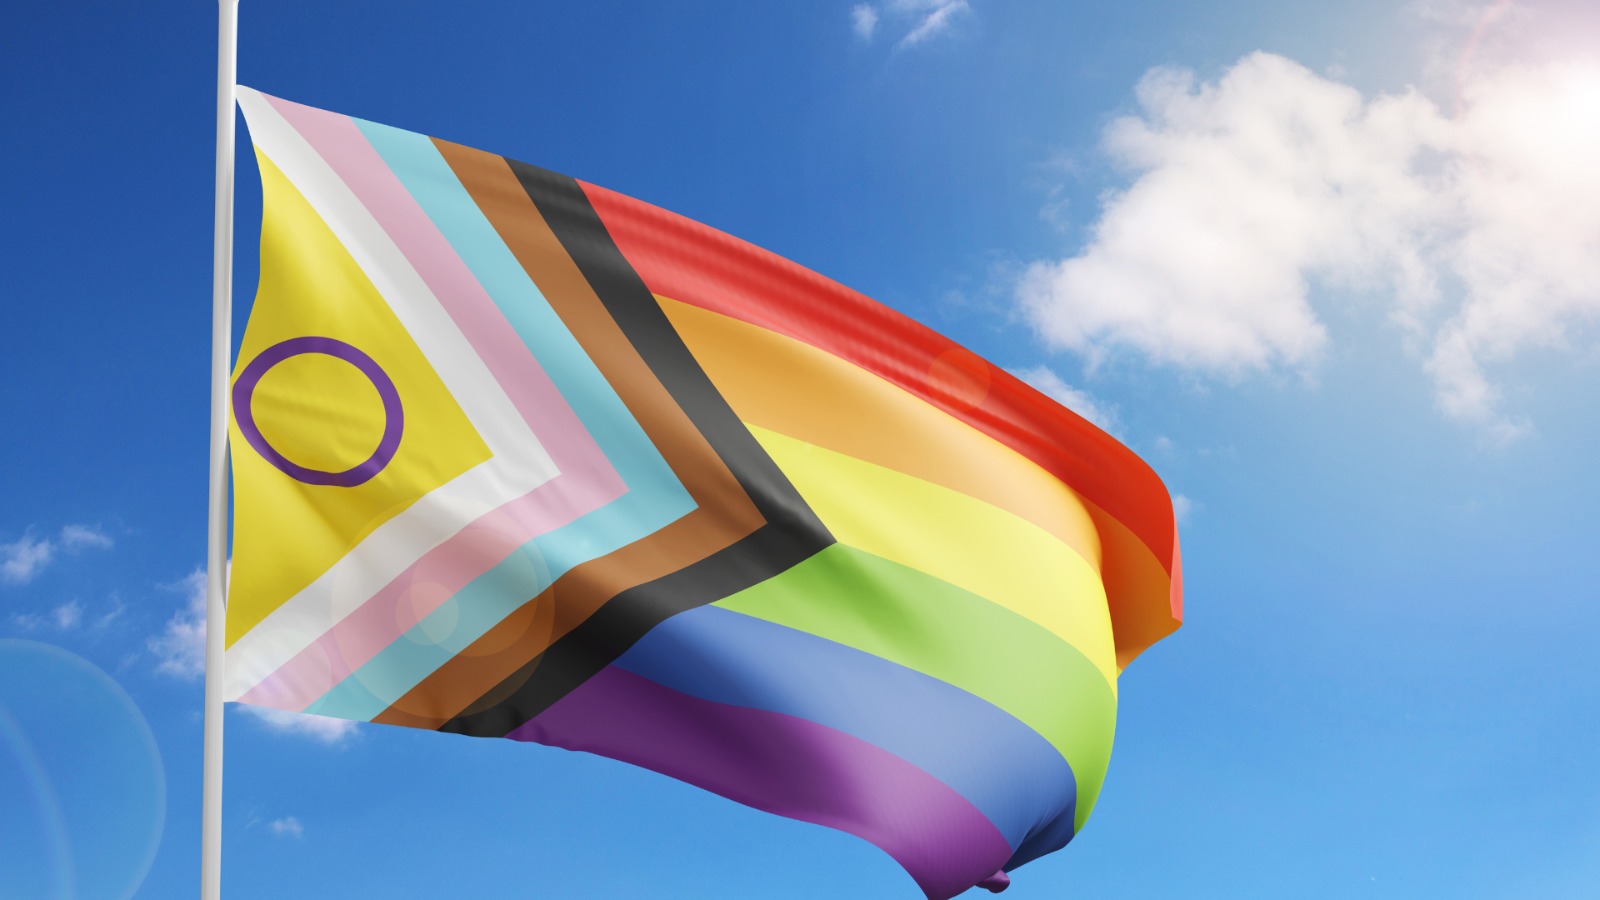 Iniciativa realizada pela pasta de Direitos Humanos com a Fiocruz destinará R$ 1,4 milhão para fortalecer 12 casas de acolhimento para pessoas LGBTQIA+